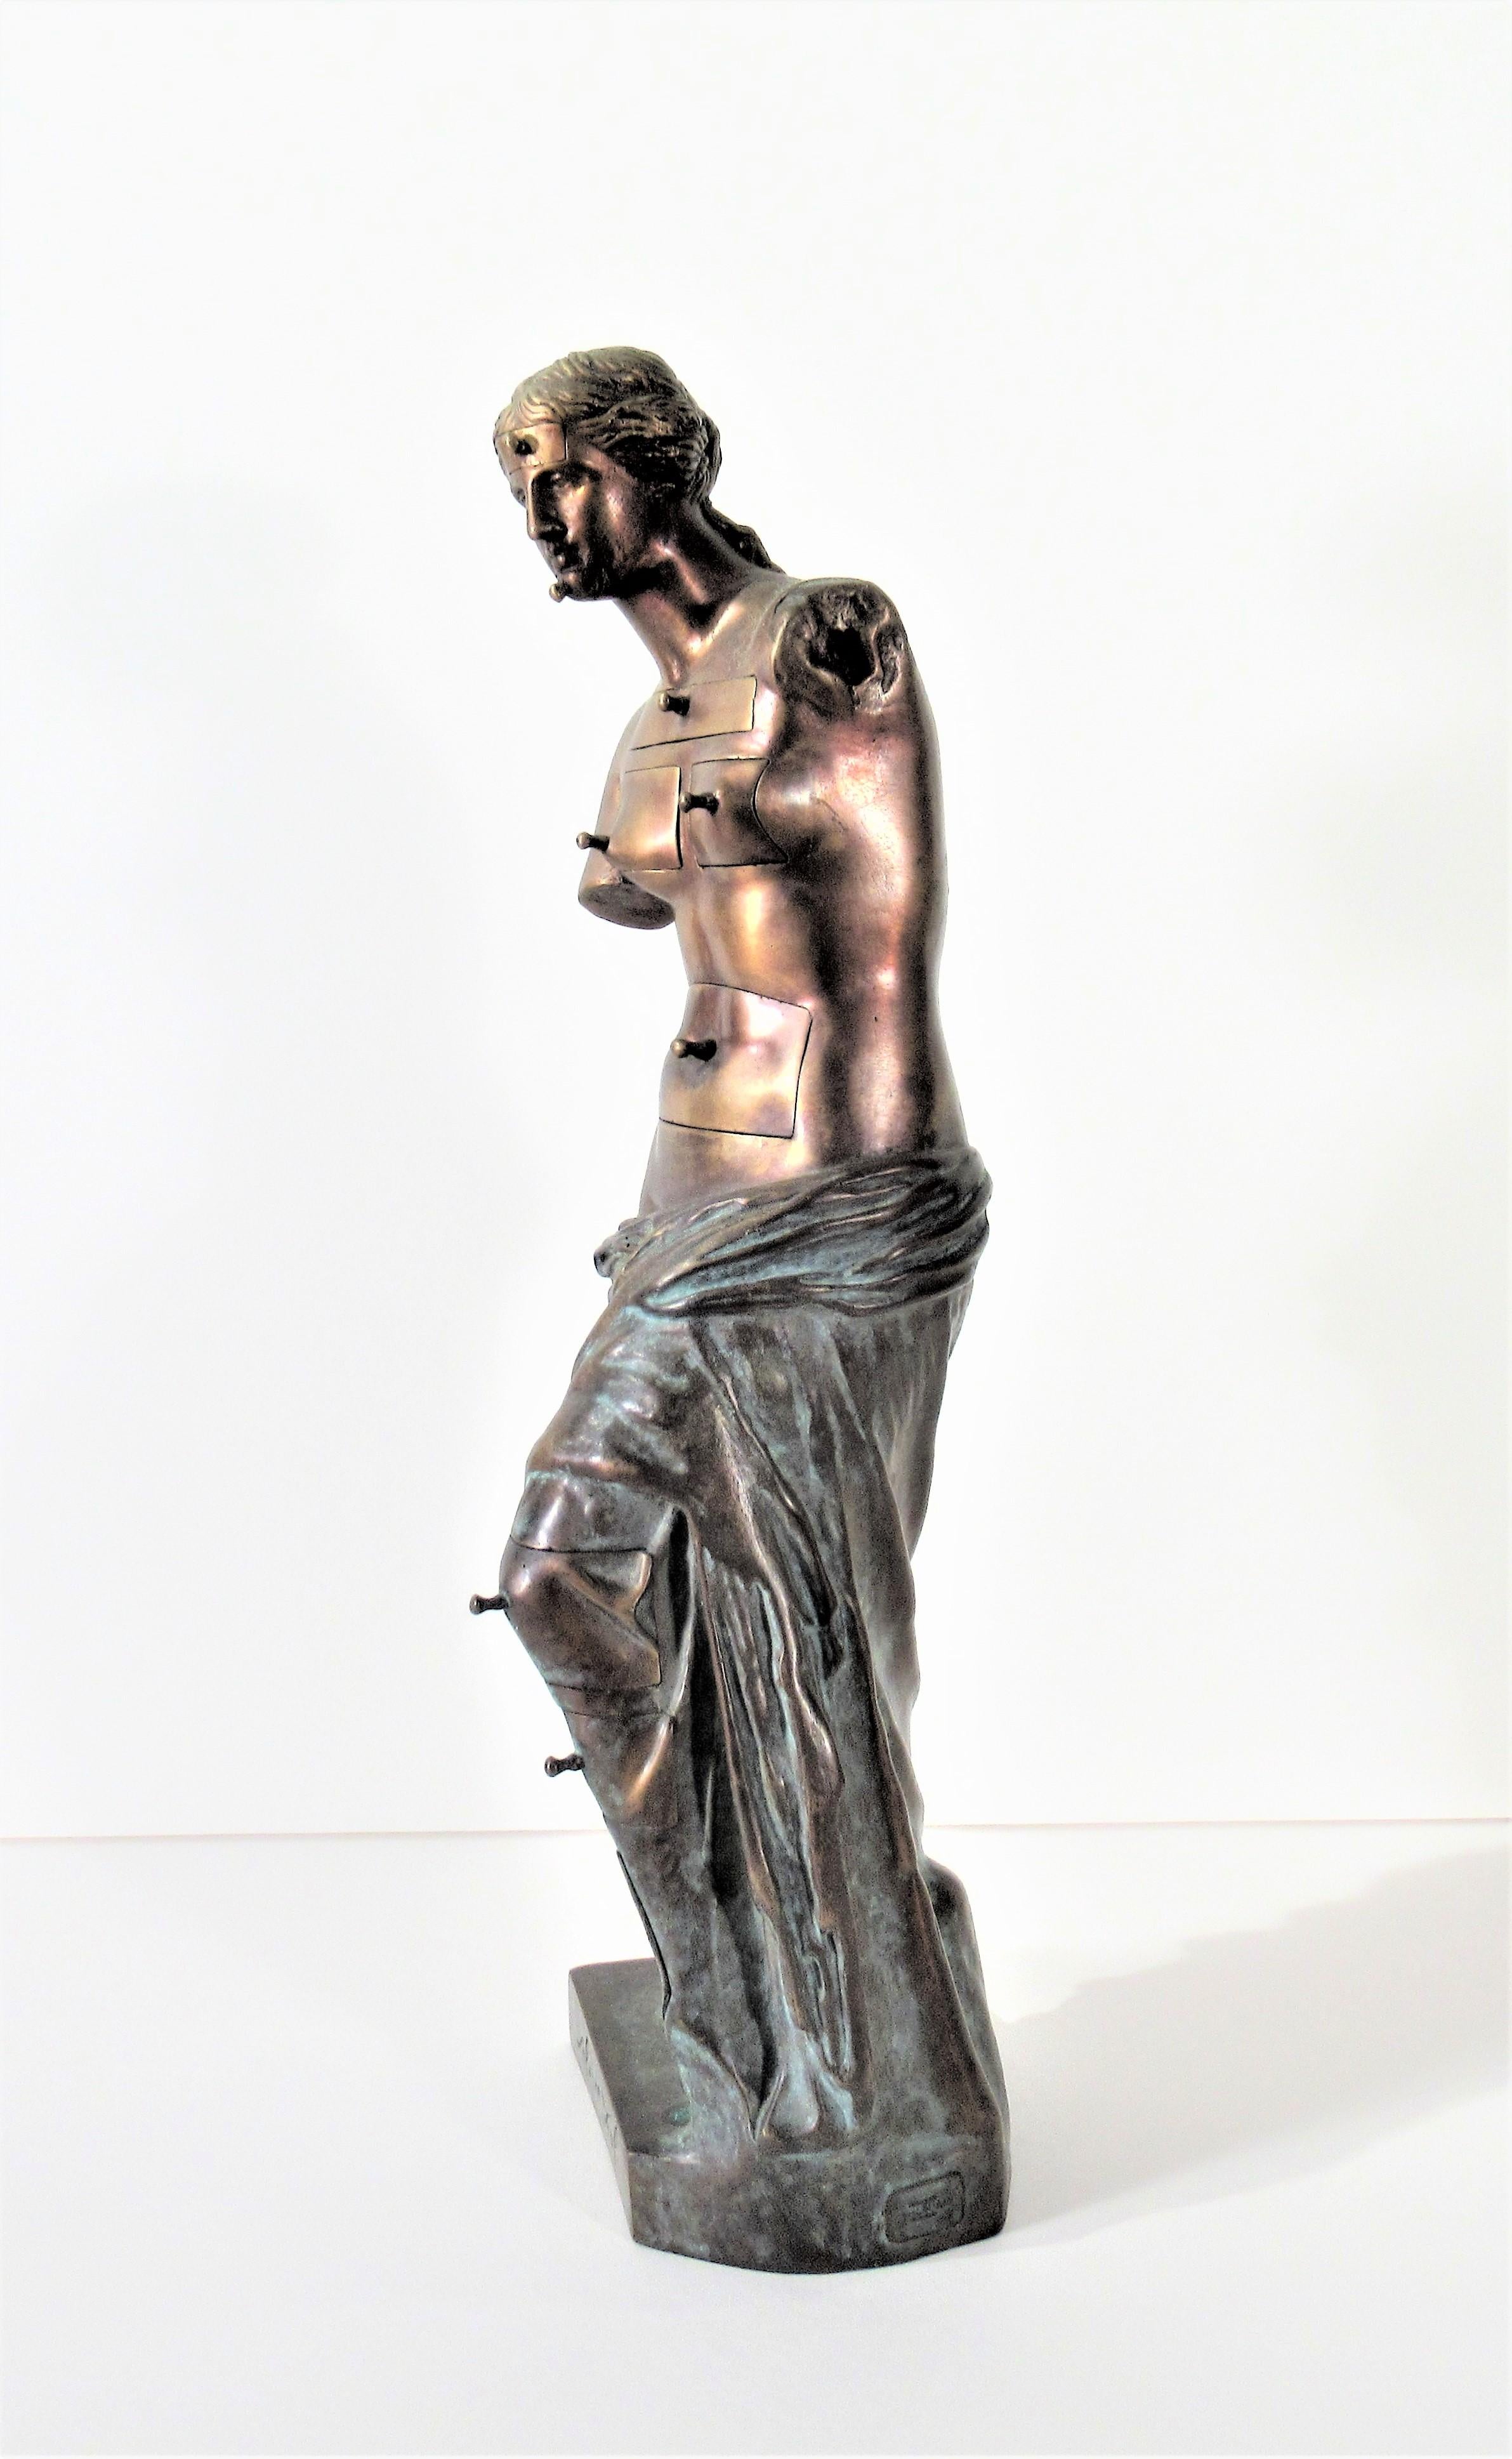 Venus de Milo aux Tiroirs - Sculpture by Salvador Dalí